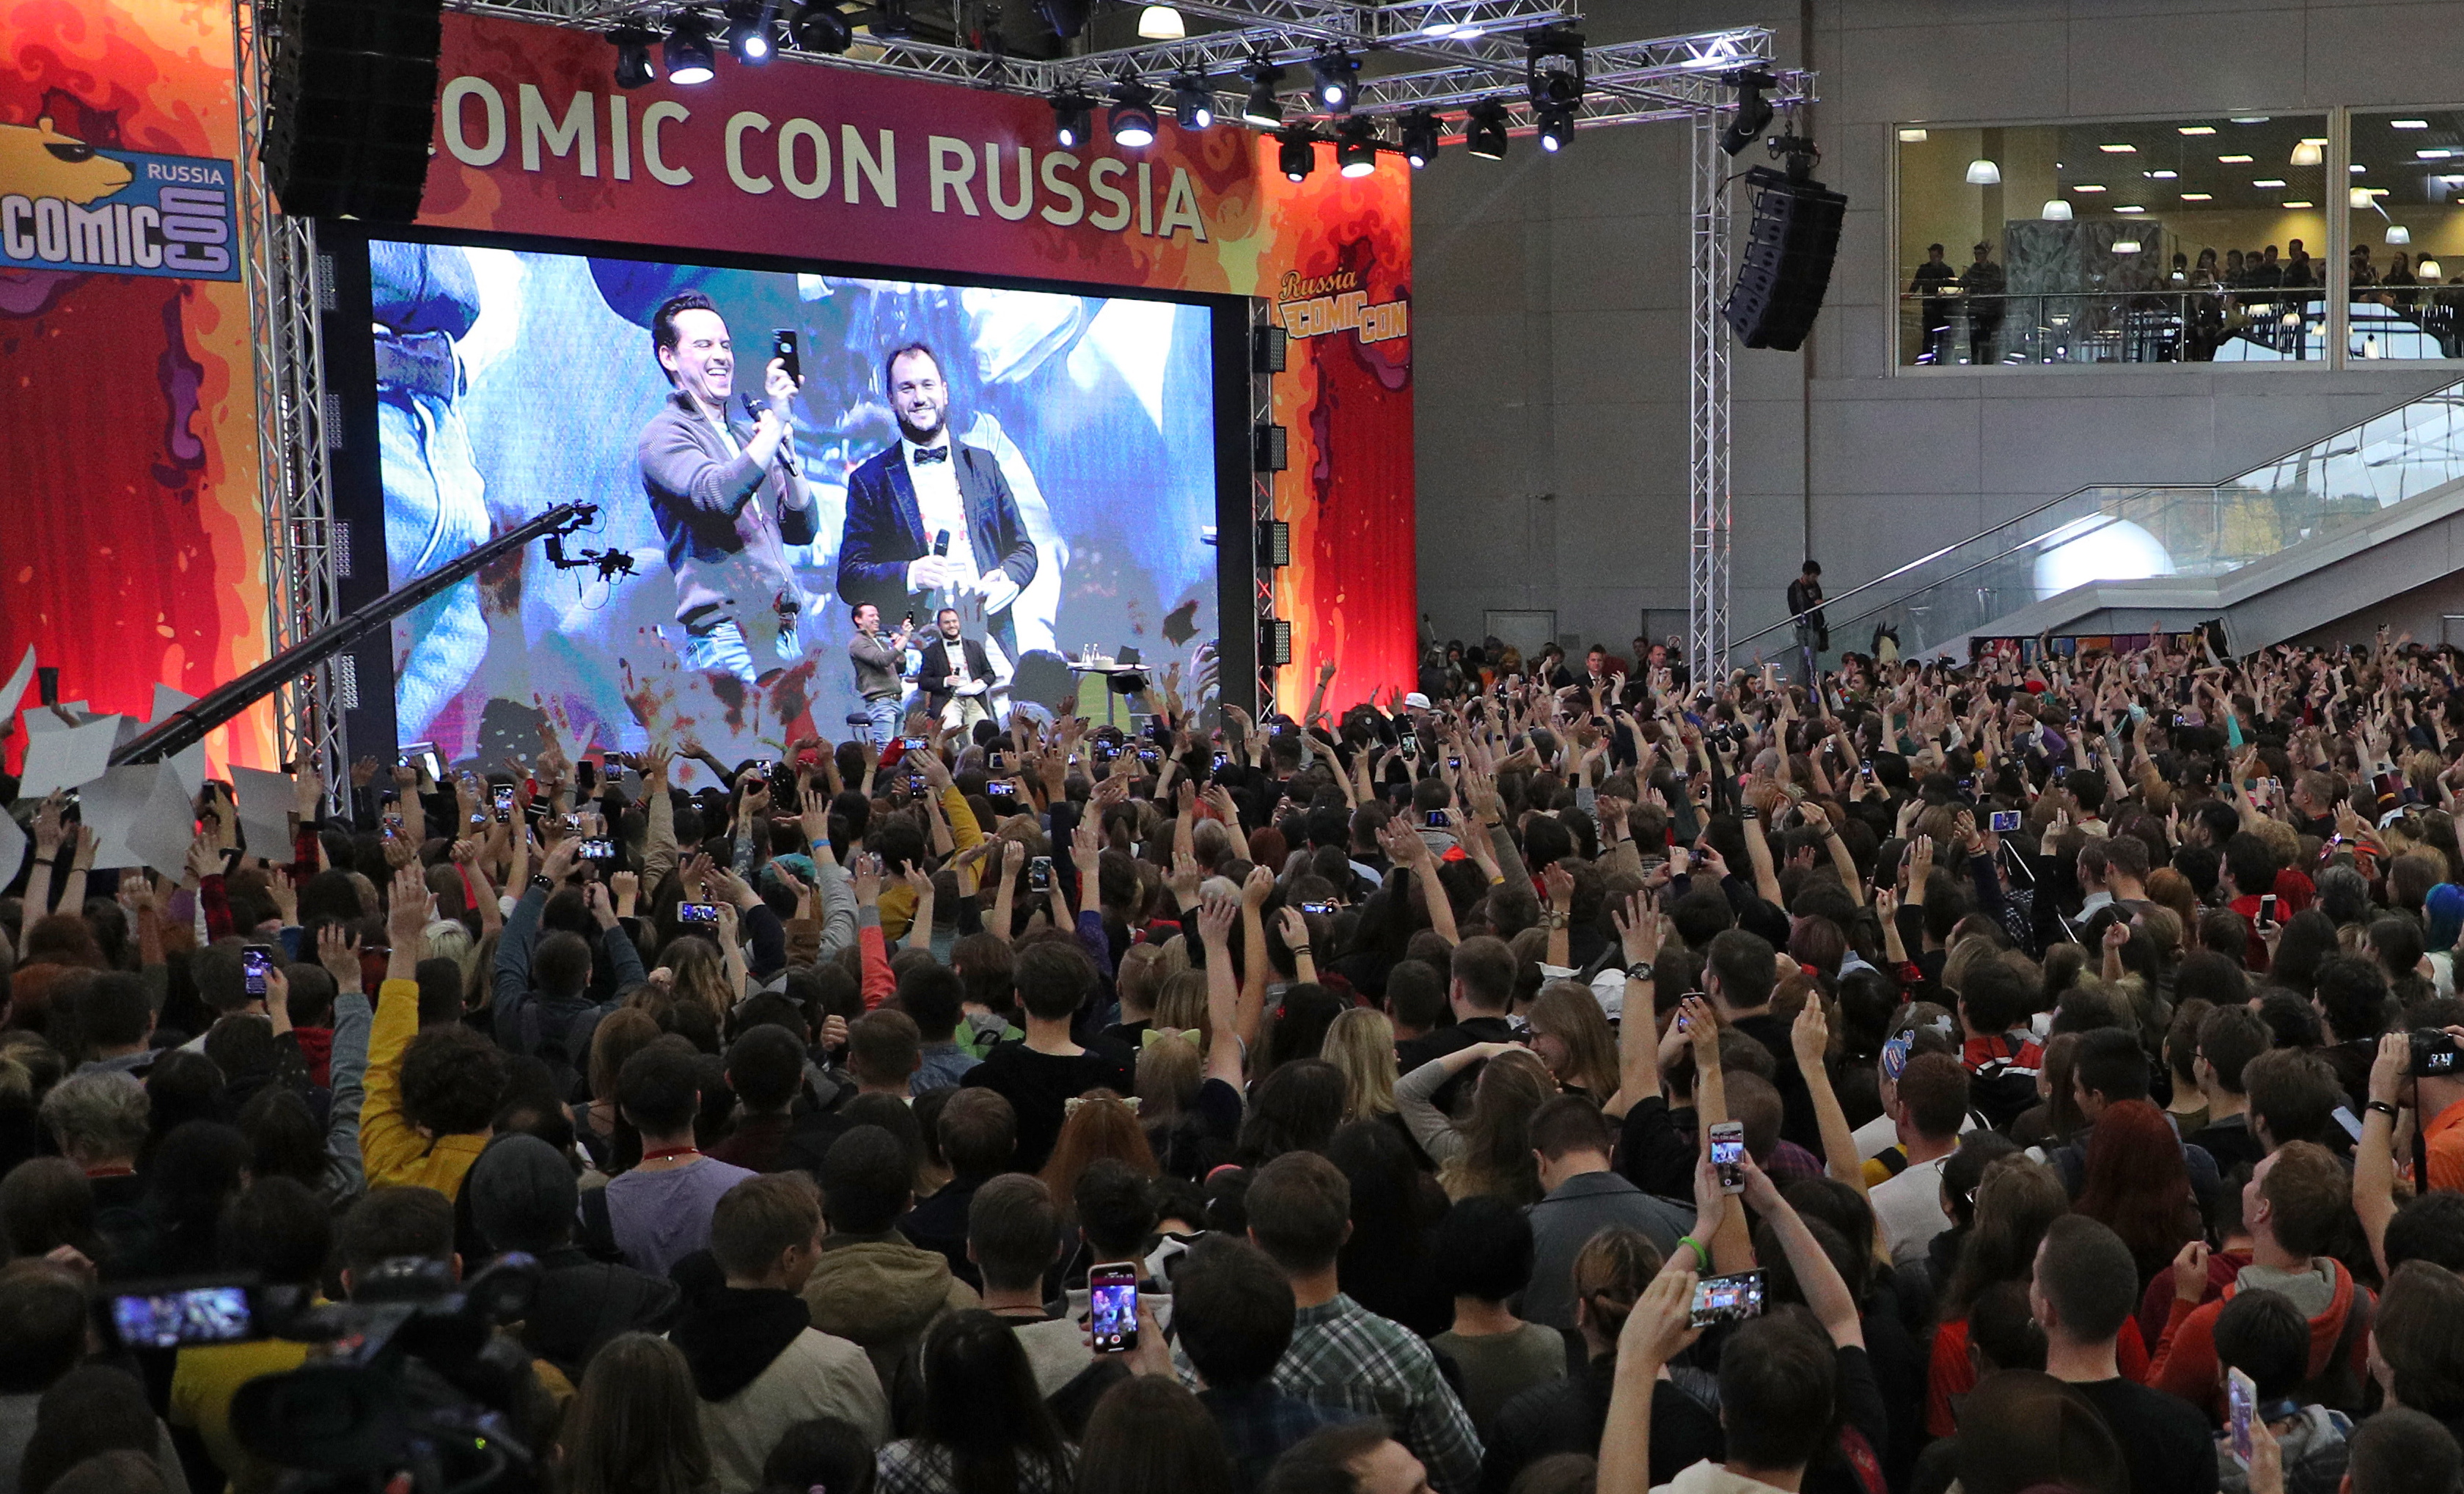  КиноПоиск расскажет о новых проектах и проведет открытую запись подкаста на Comic Con Russia Online 